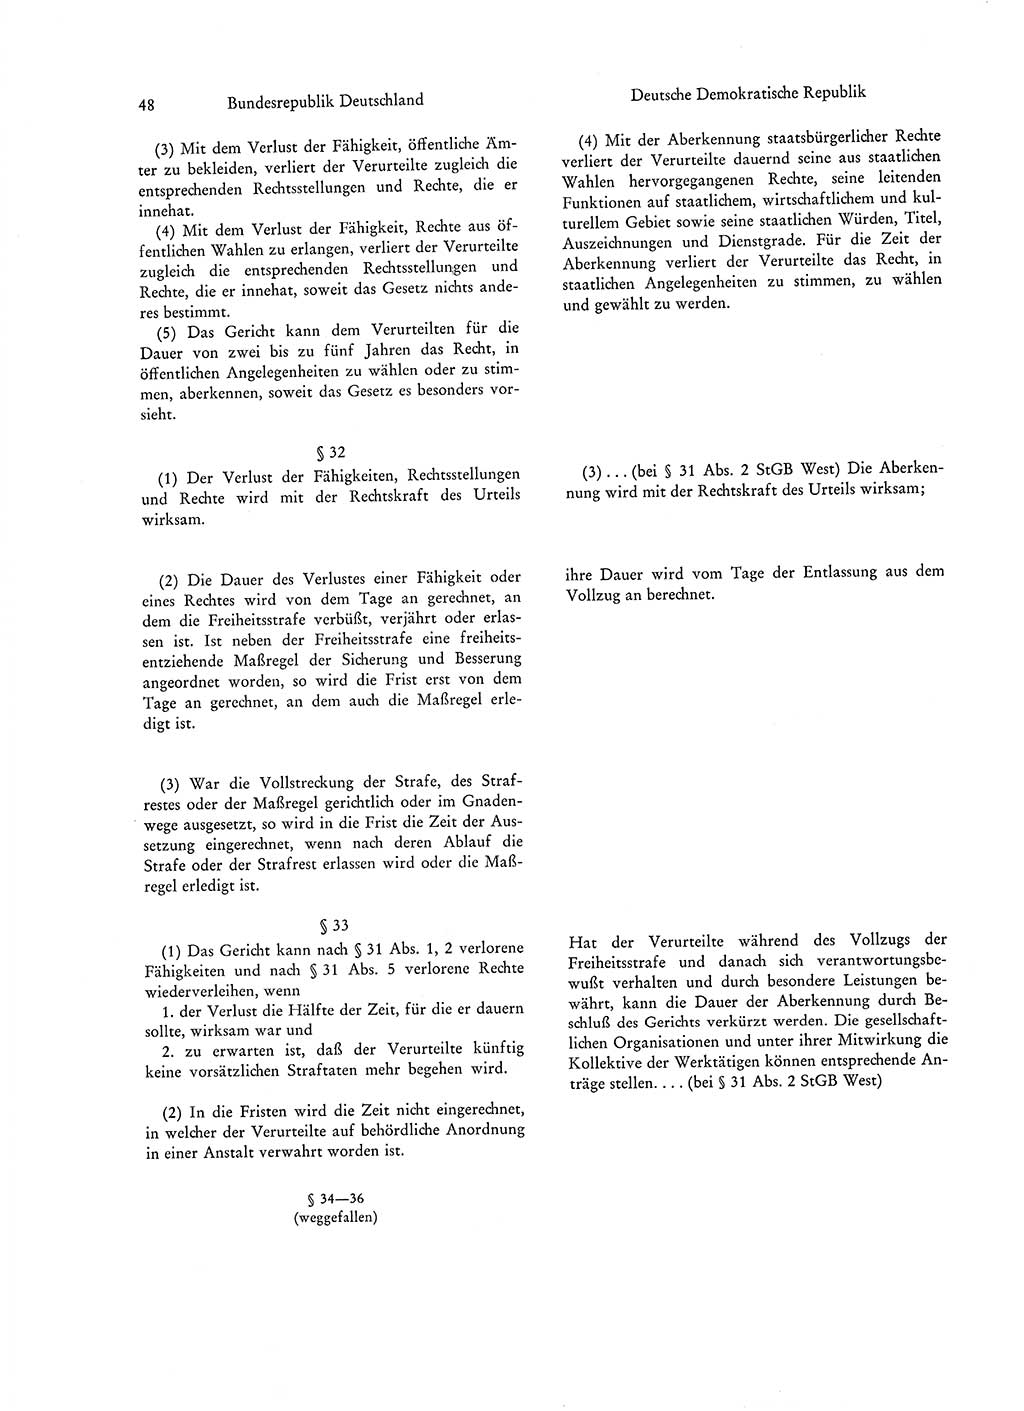 Strafgesetzgebung in Deutschland [Bundesrepublik Deutschland (BRD) und Deutsche Demokratische Republik (DDR)] 1972, Seite 48 (Str.-Ges. Dtl. StGB BRD DDR 1972, S. 48)